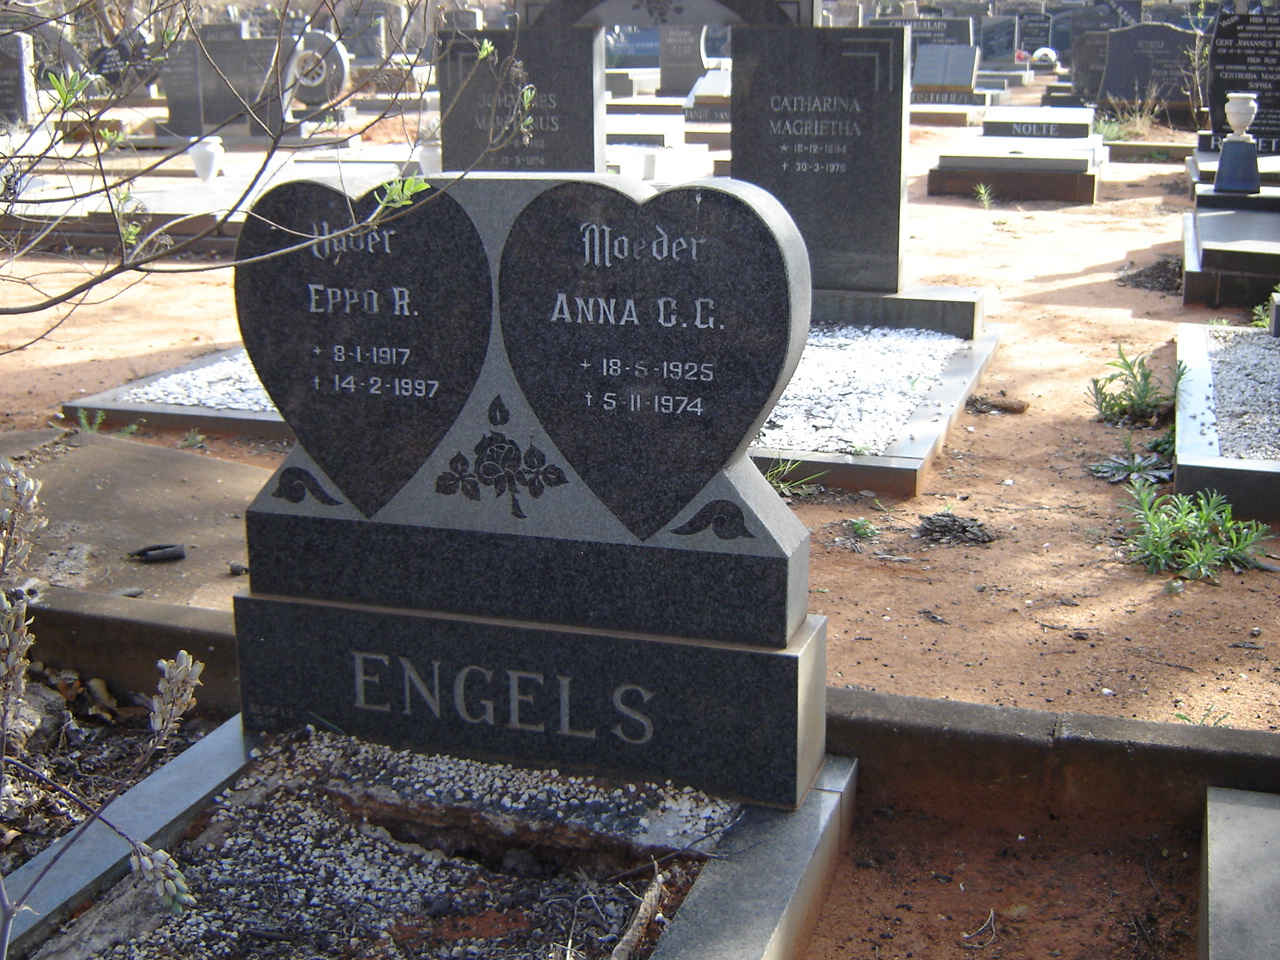 ENGELS Eppo R. 1917-1997 & Anna C.G. 1925-1974